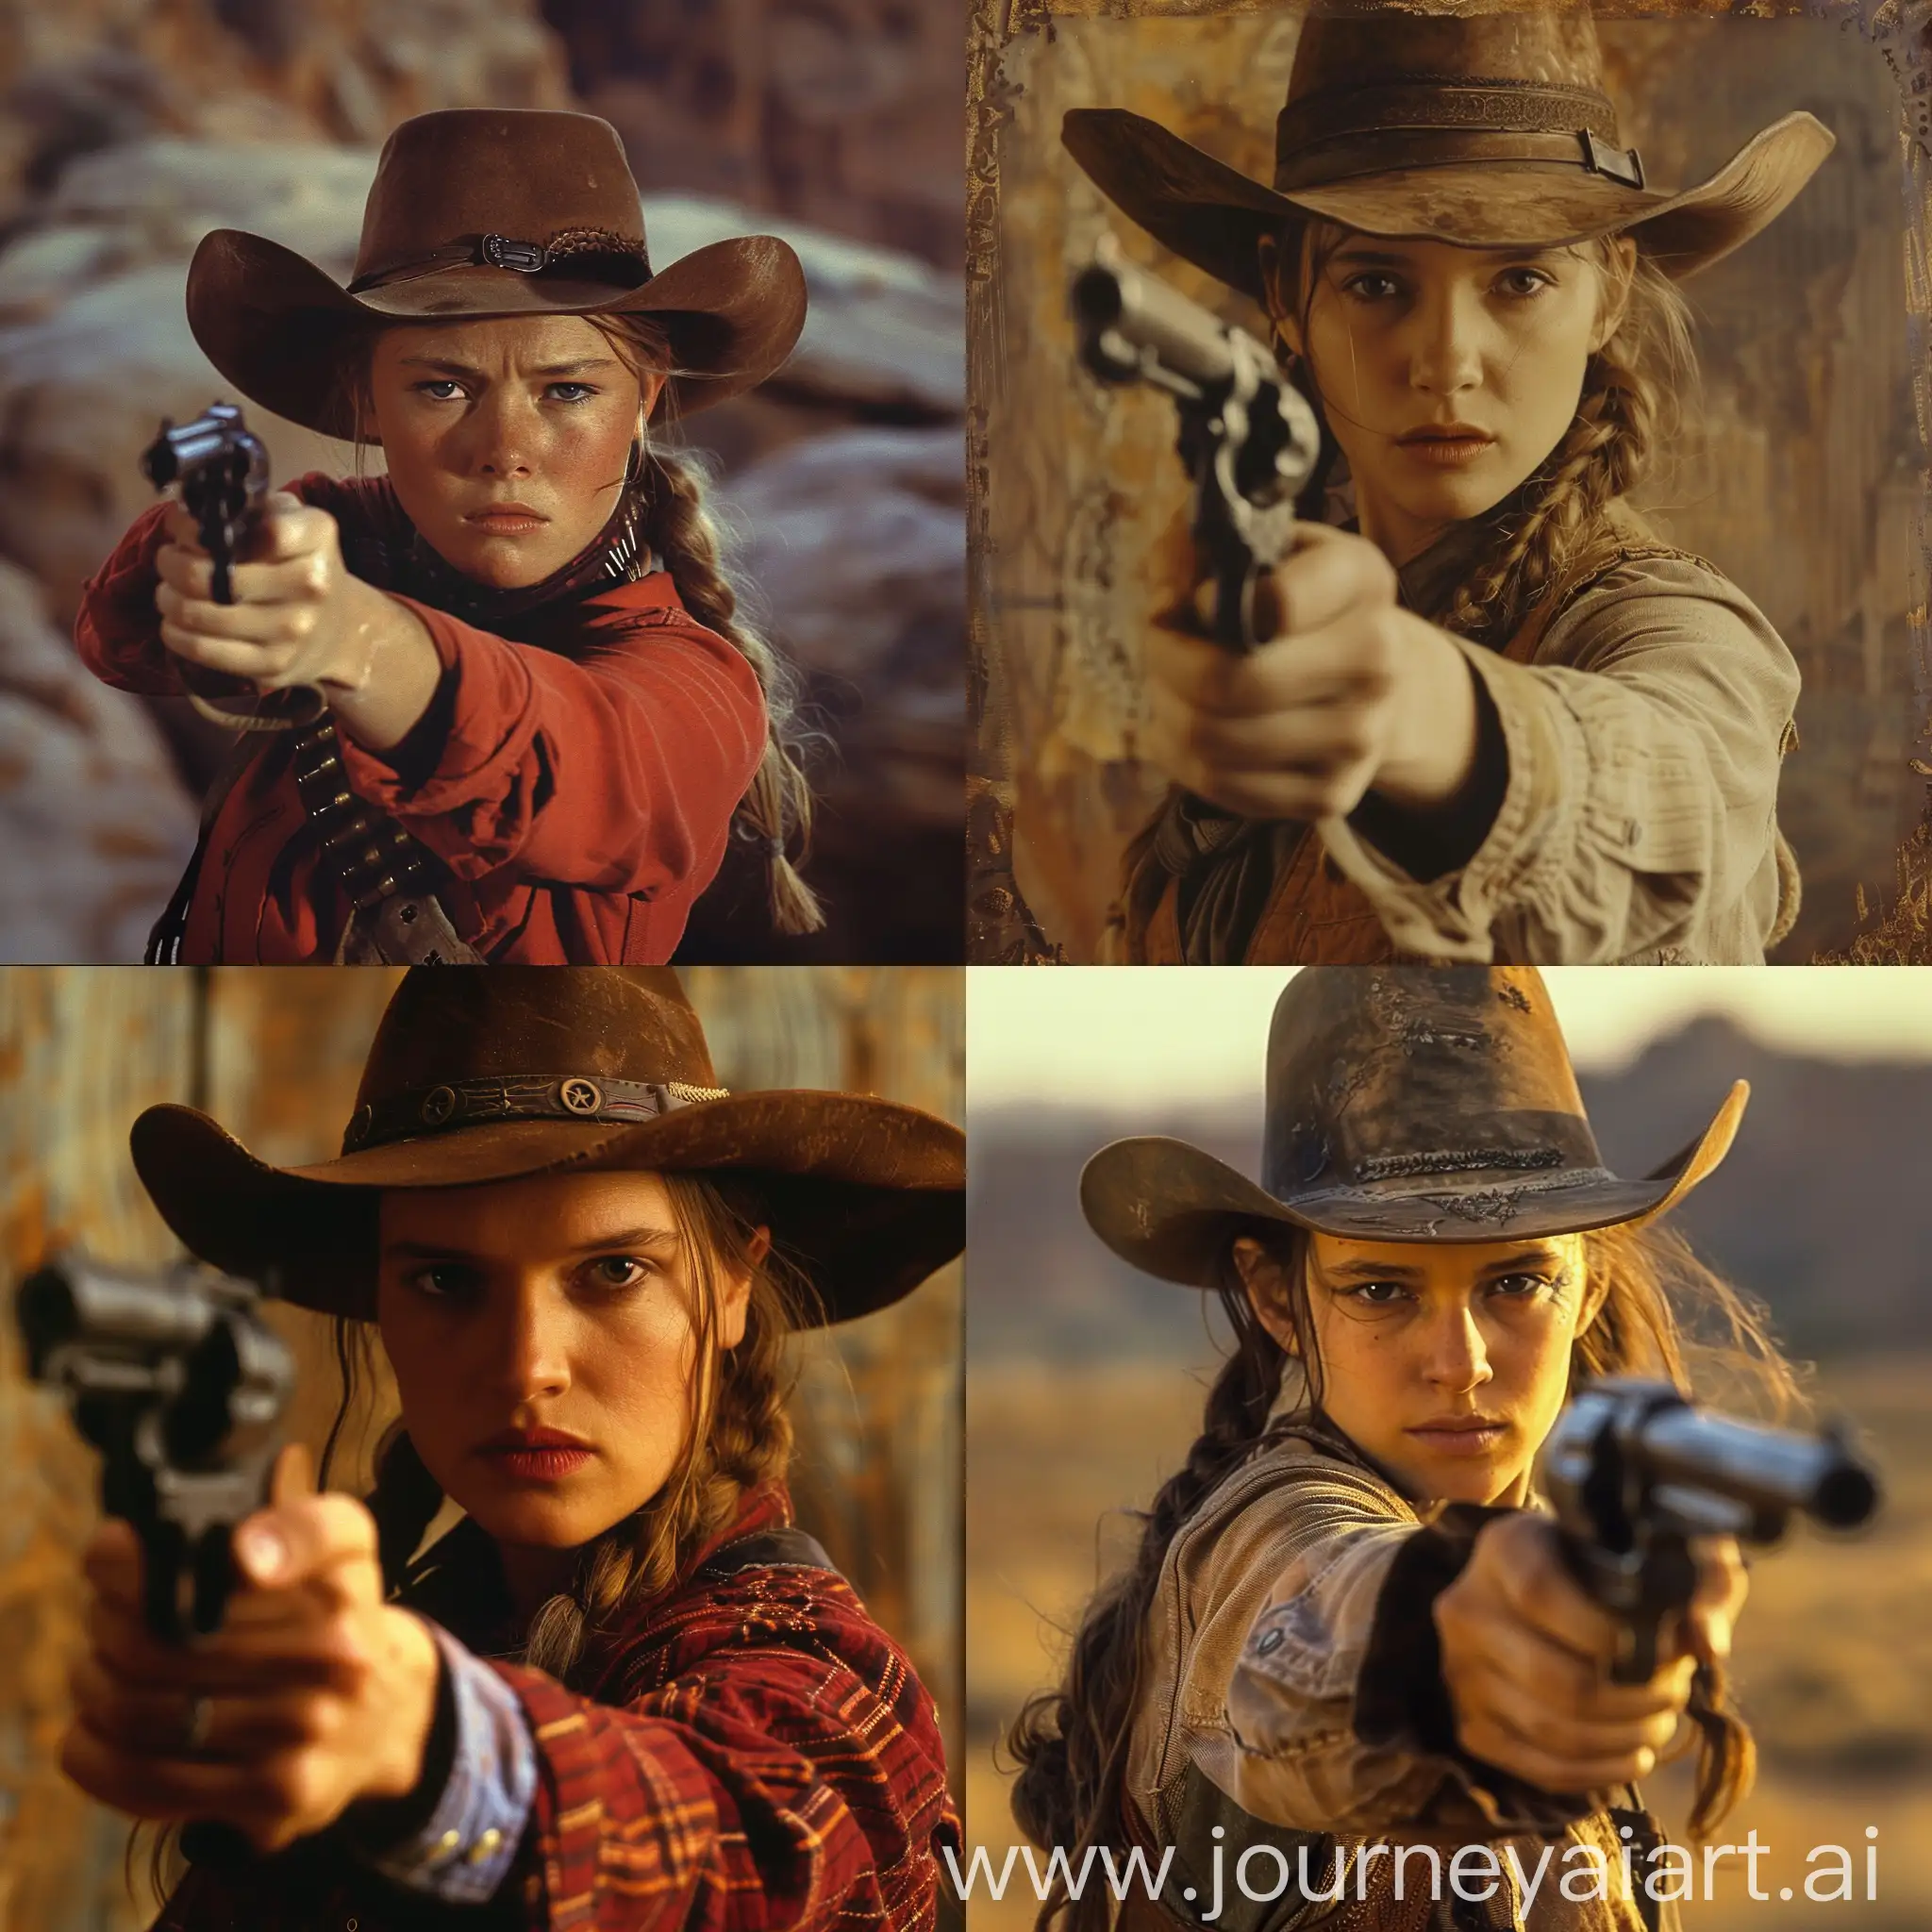 film still, film by Quentin Tarantino, western, 19th century, young woman, cowboy hat, gun, живопись 